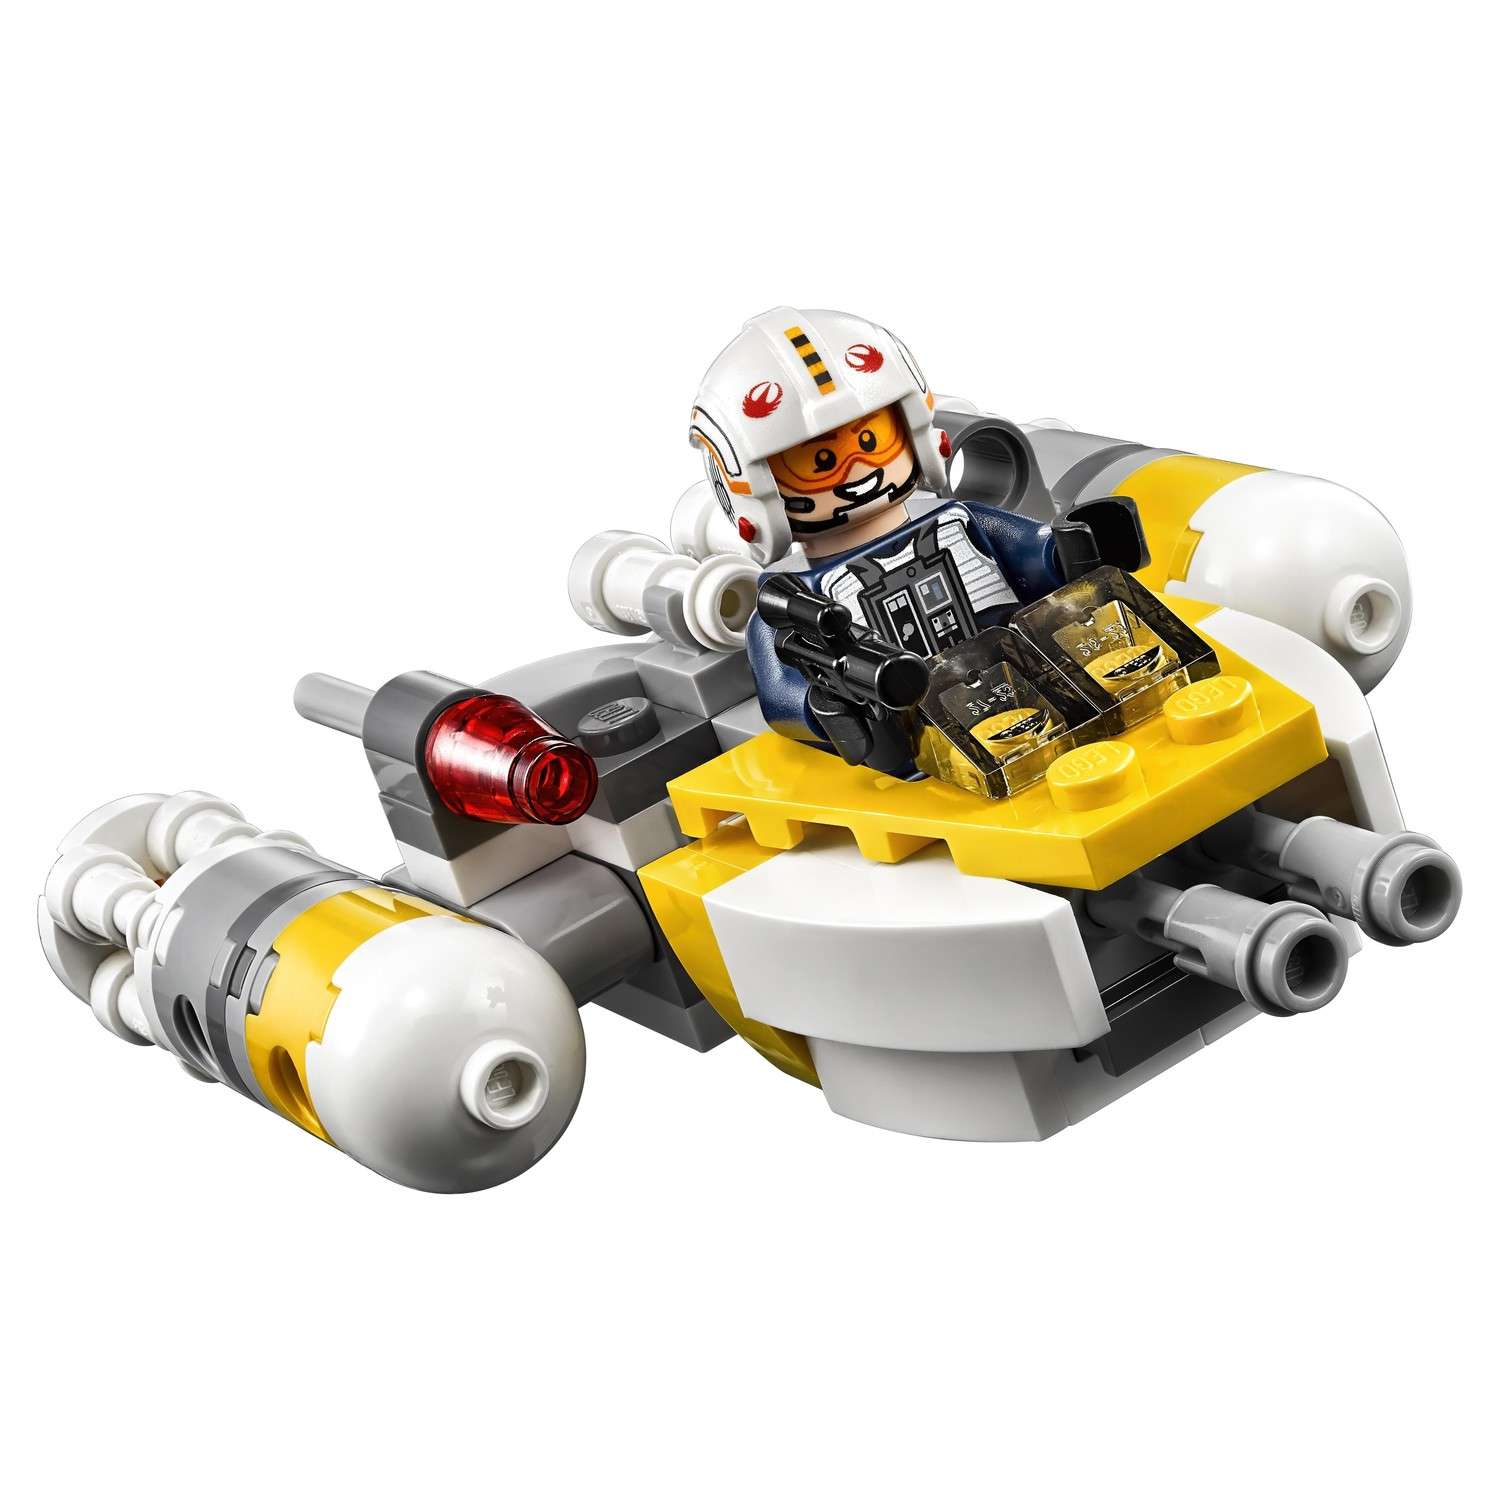 Конструктор LEGO Star Wars TM Микроистребитель типа Y (75162) - фото 7